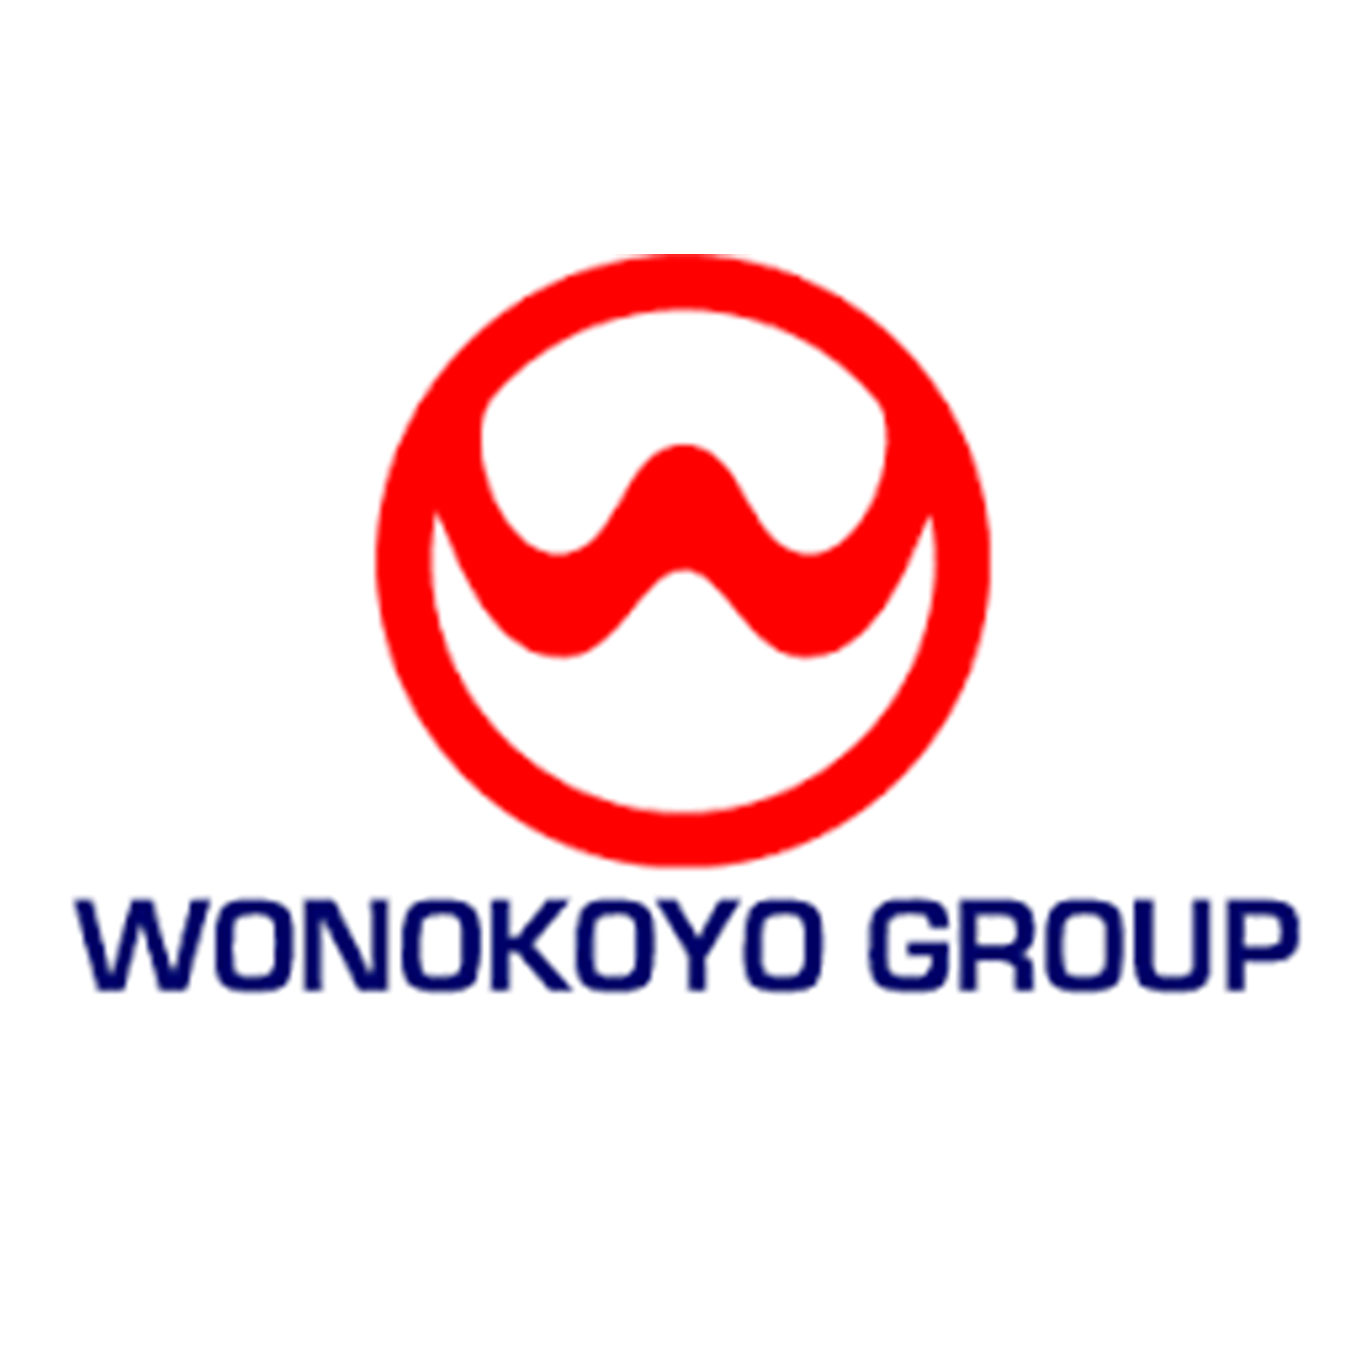 Wonokoyo Group